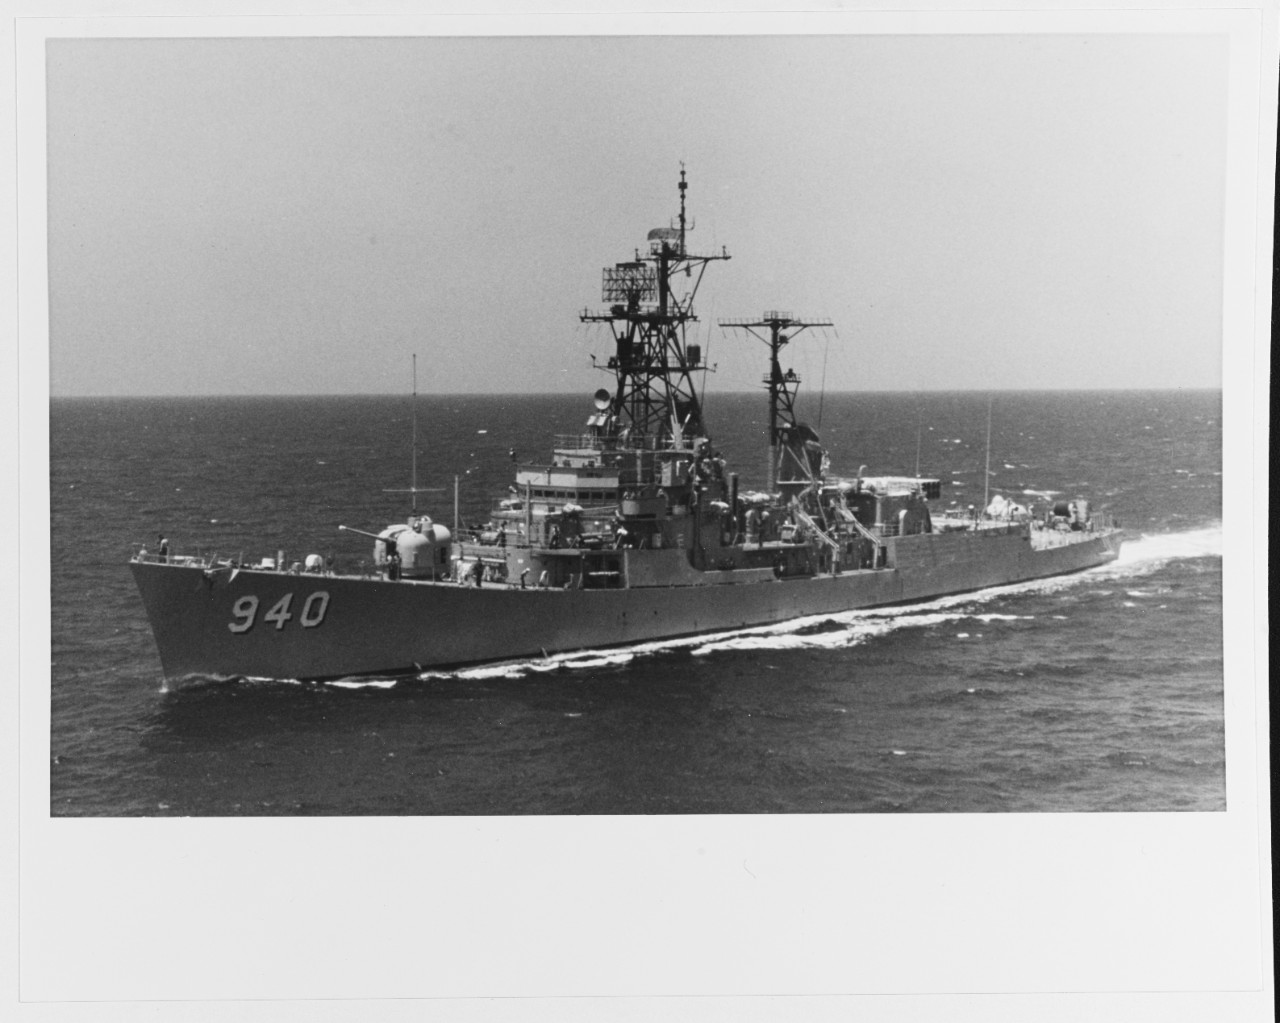 USS MANLEY (DD-940)